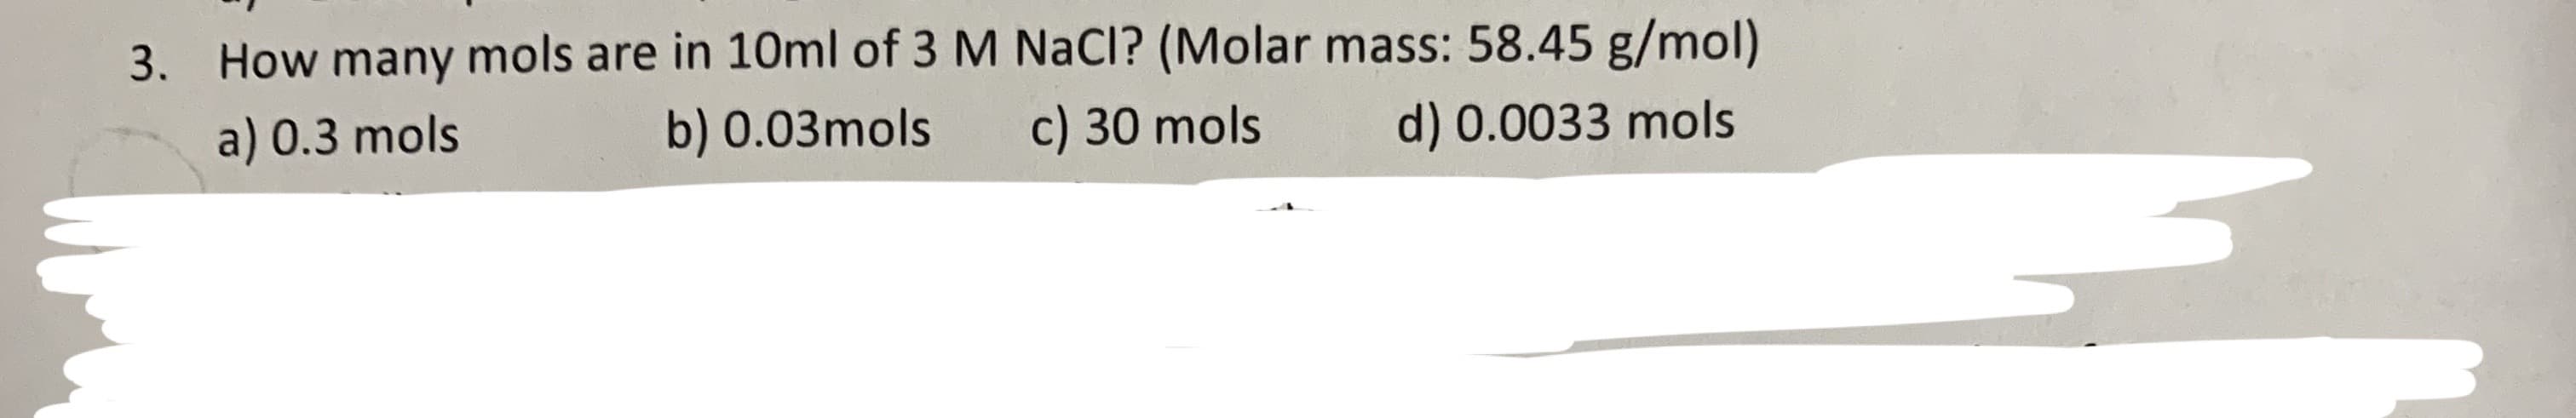 How many mols are in 10ml of 3 M NaCl? (Molar mass: 58.45 g/mol)
3.
a) 0.3 mols
b) 0.03mols
c) 30 mols
d) 0.0033 mols
